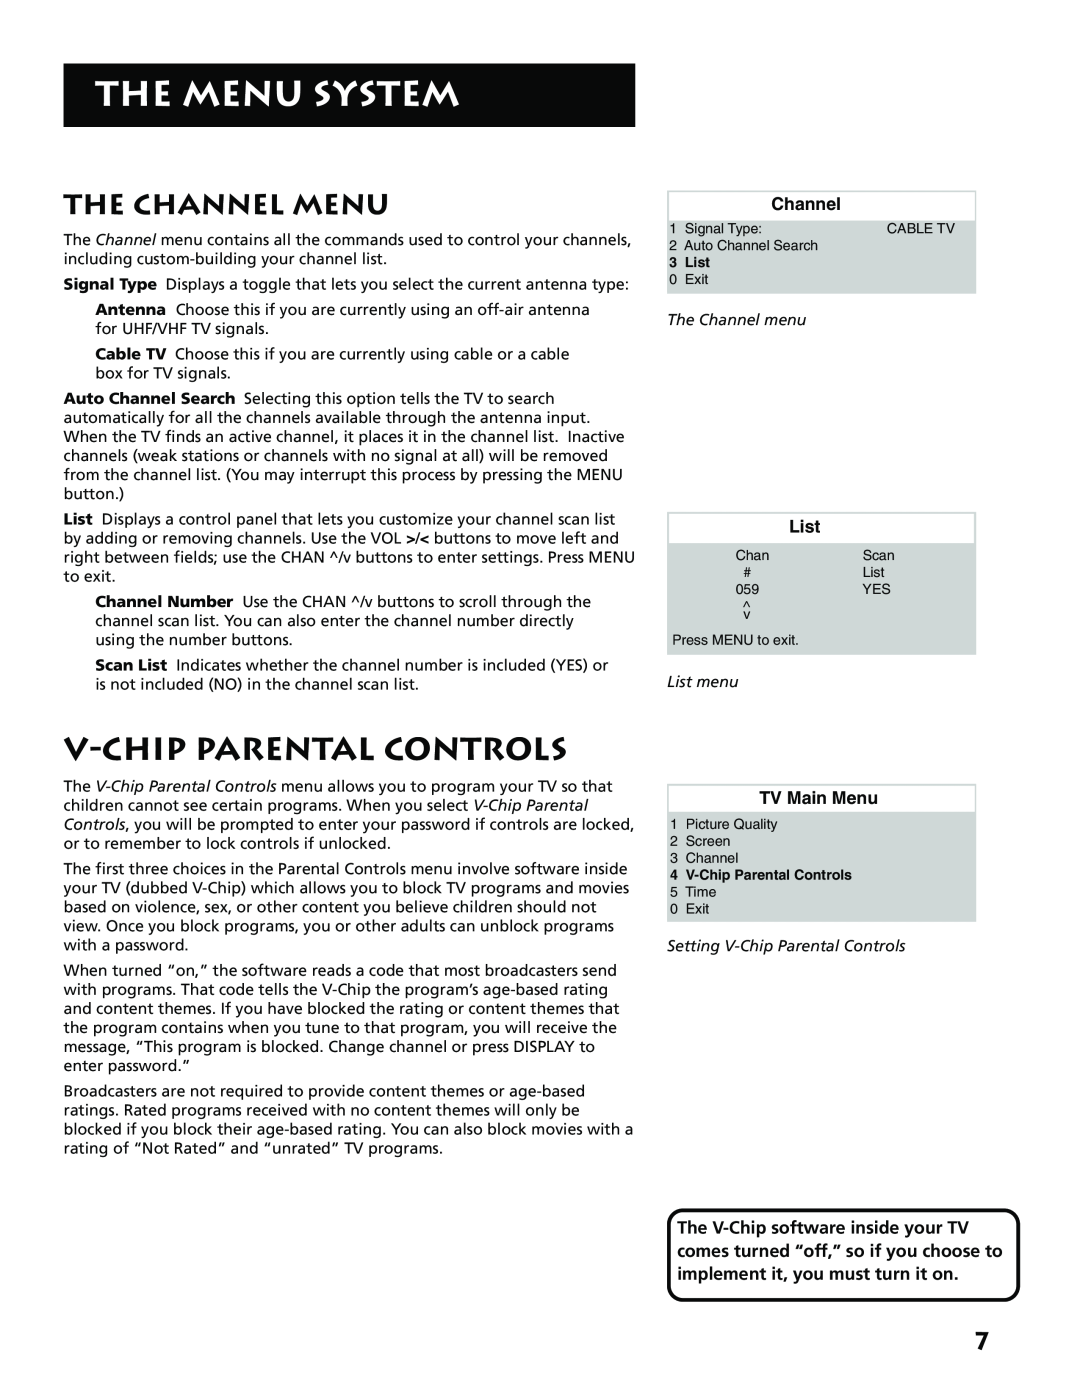 RCA E13341 V-Chip Parental Controls, The Channel Menu, The Menu System, TV Main Menu, The Channel menu, List menu 